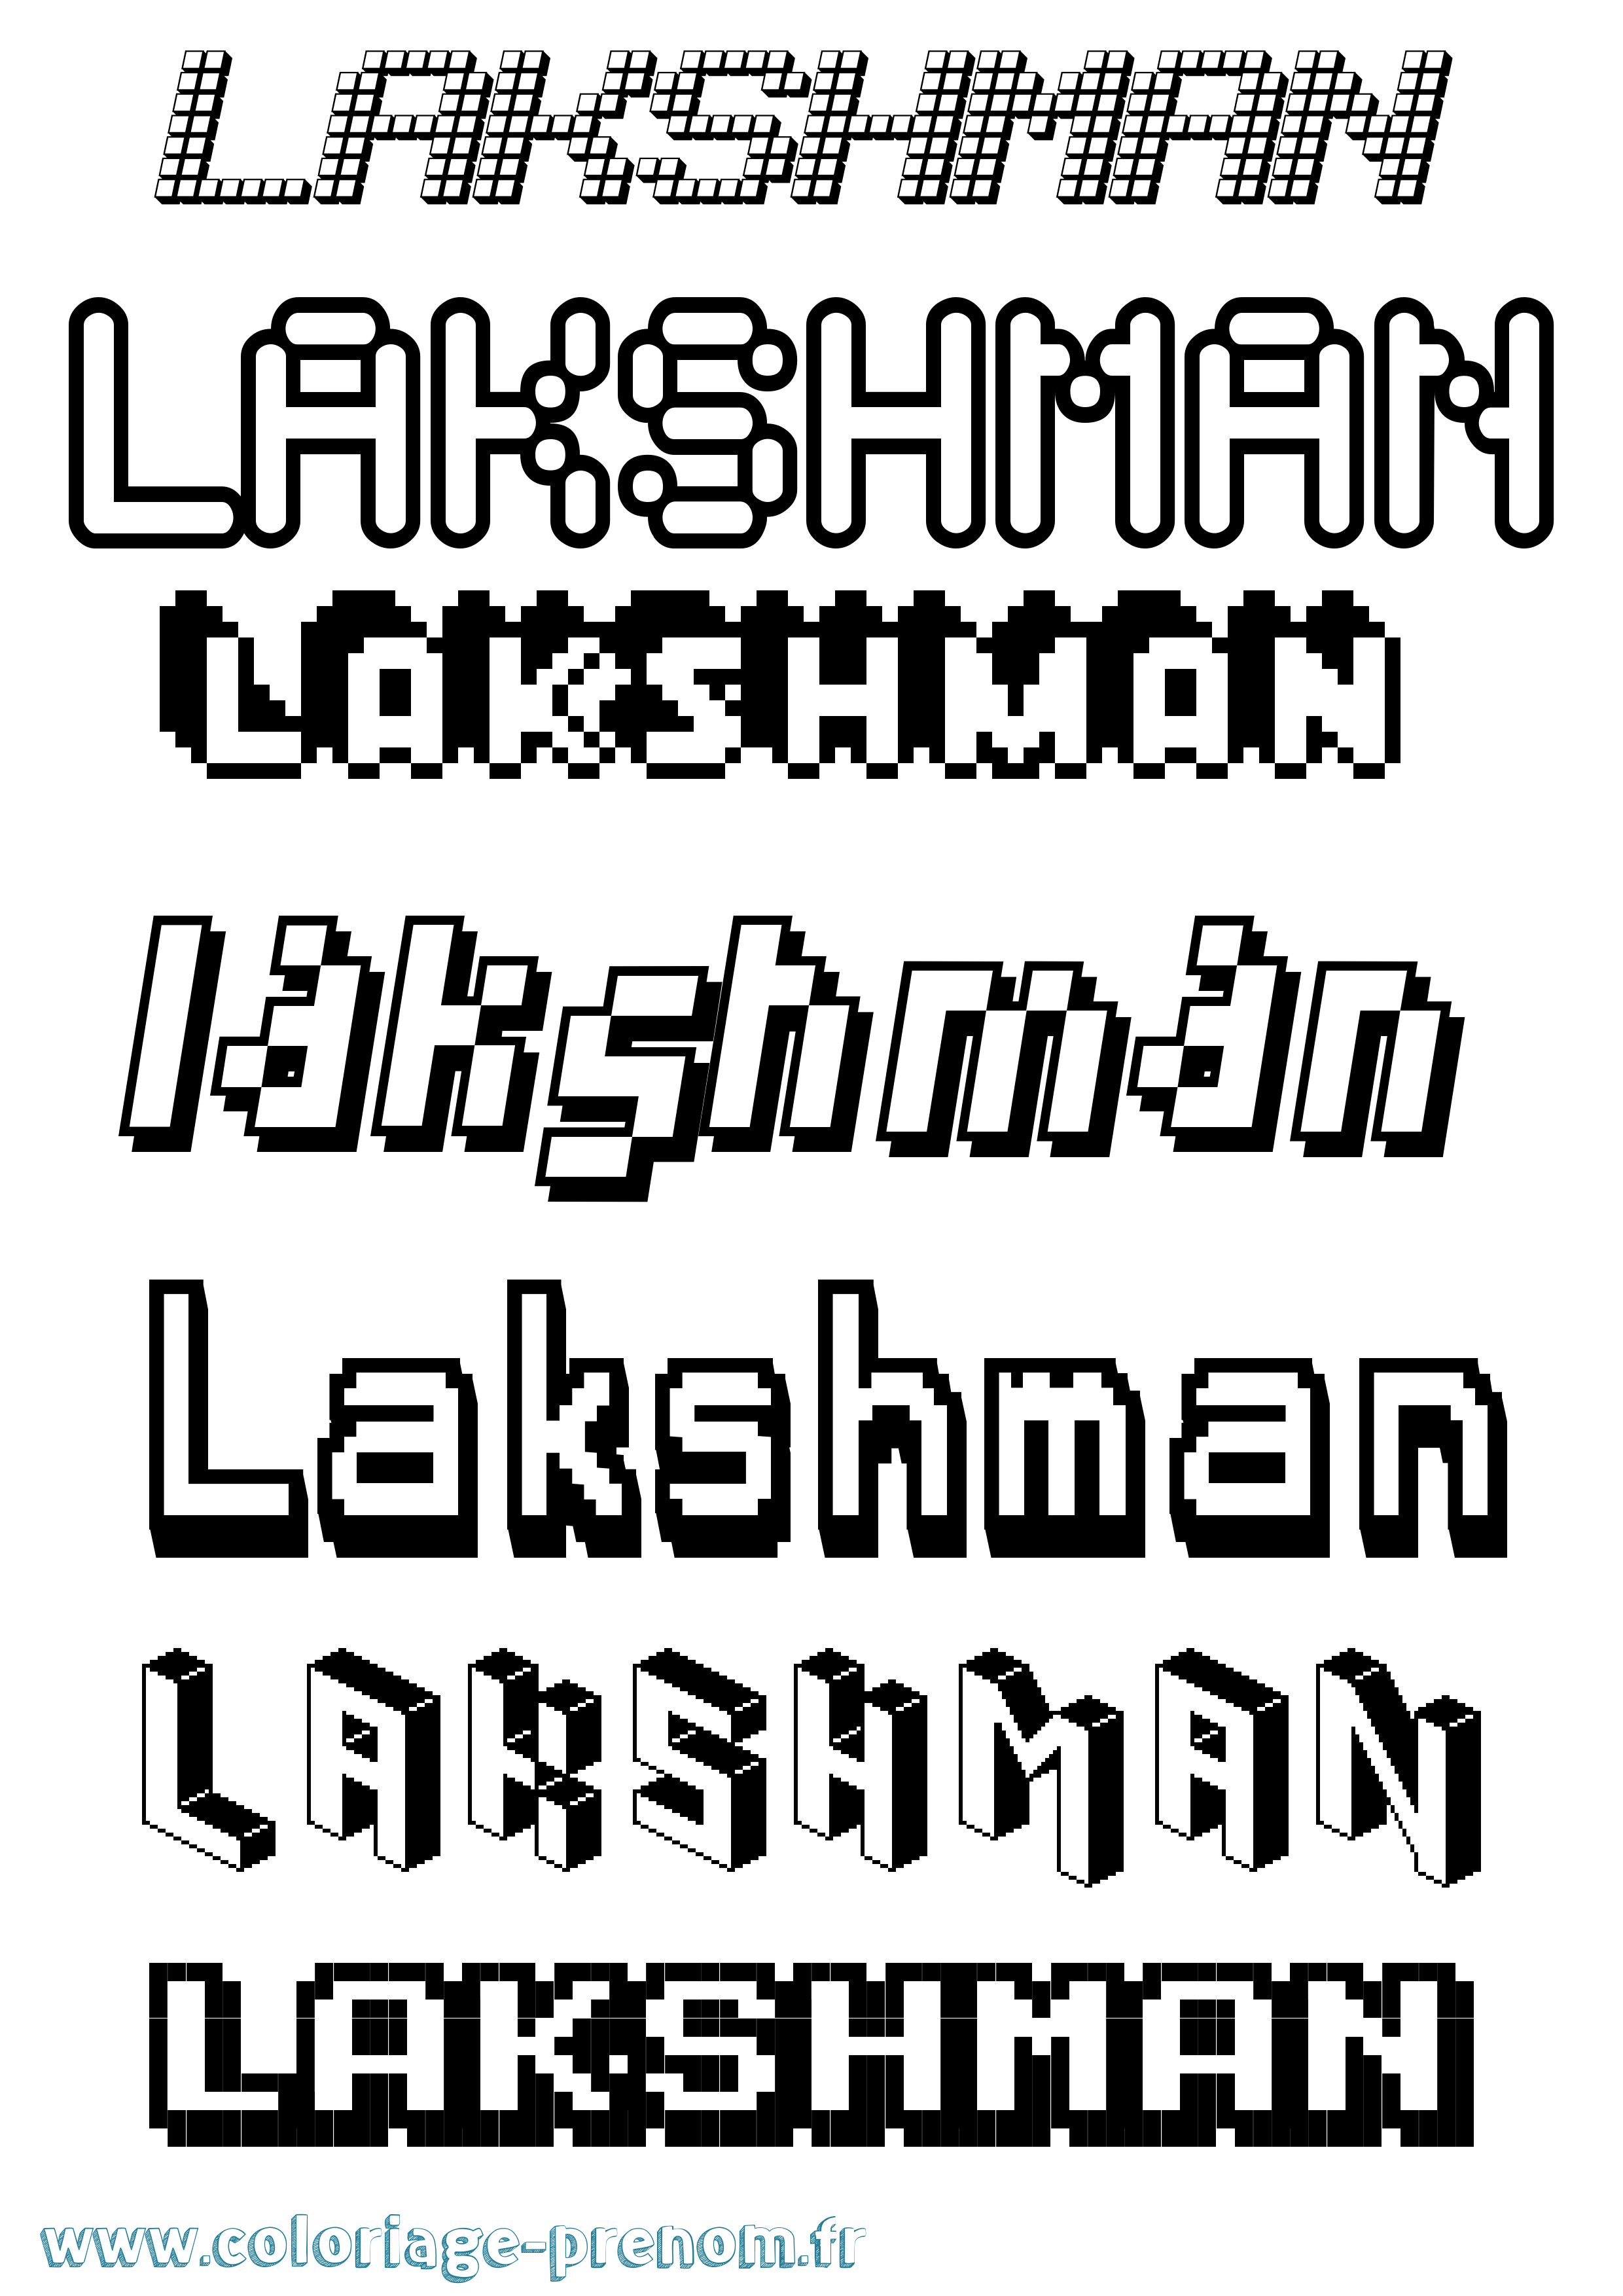 Coloriage prénom Lakshman Pixel